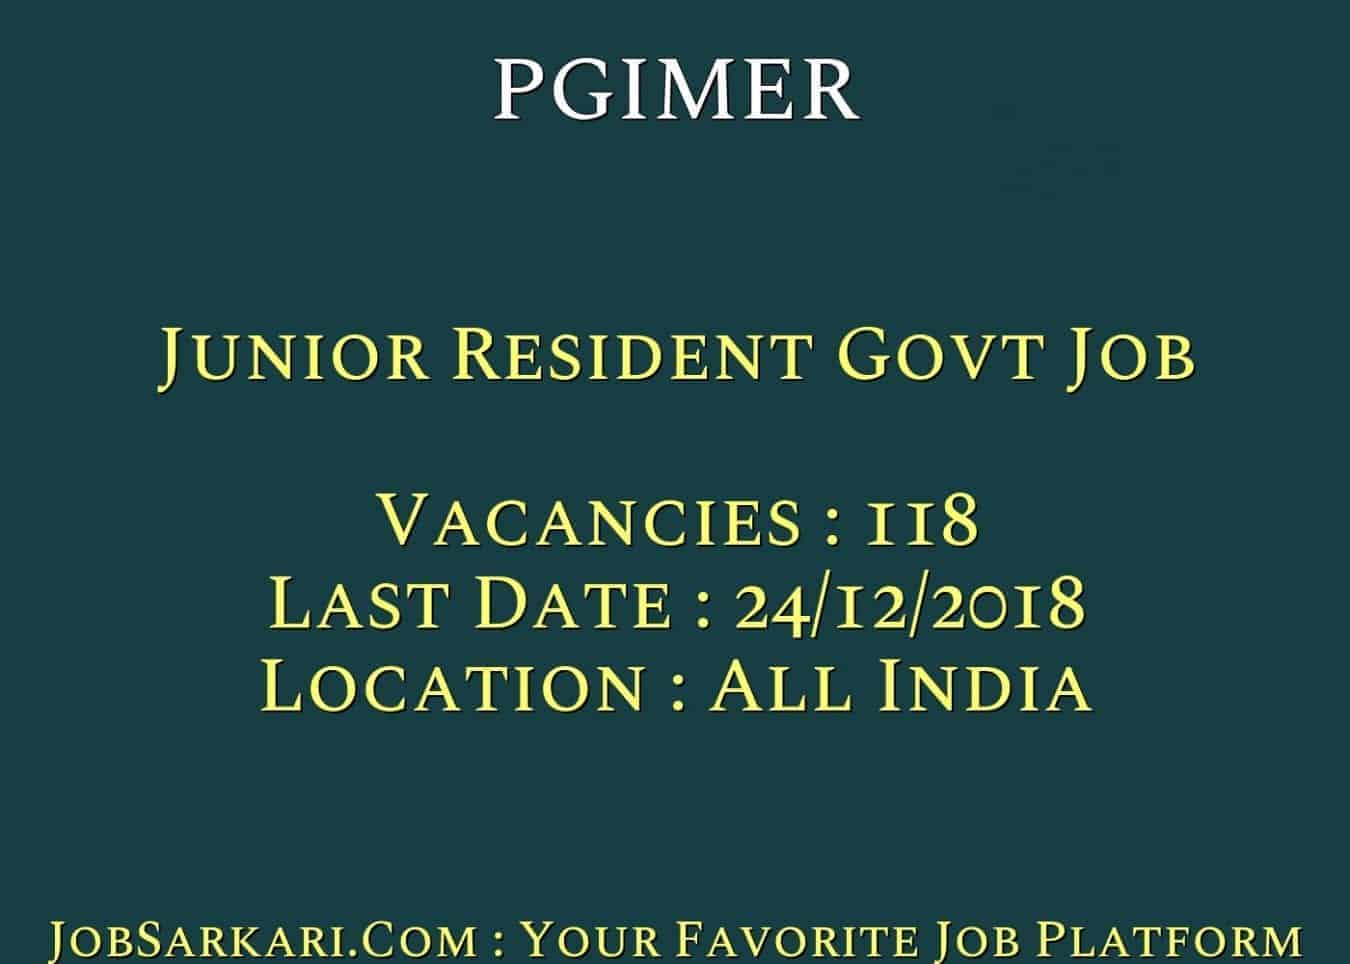 PGIMER Recruitment 2018 for Junior Resident Govt Job